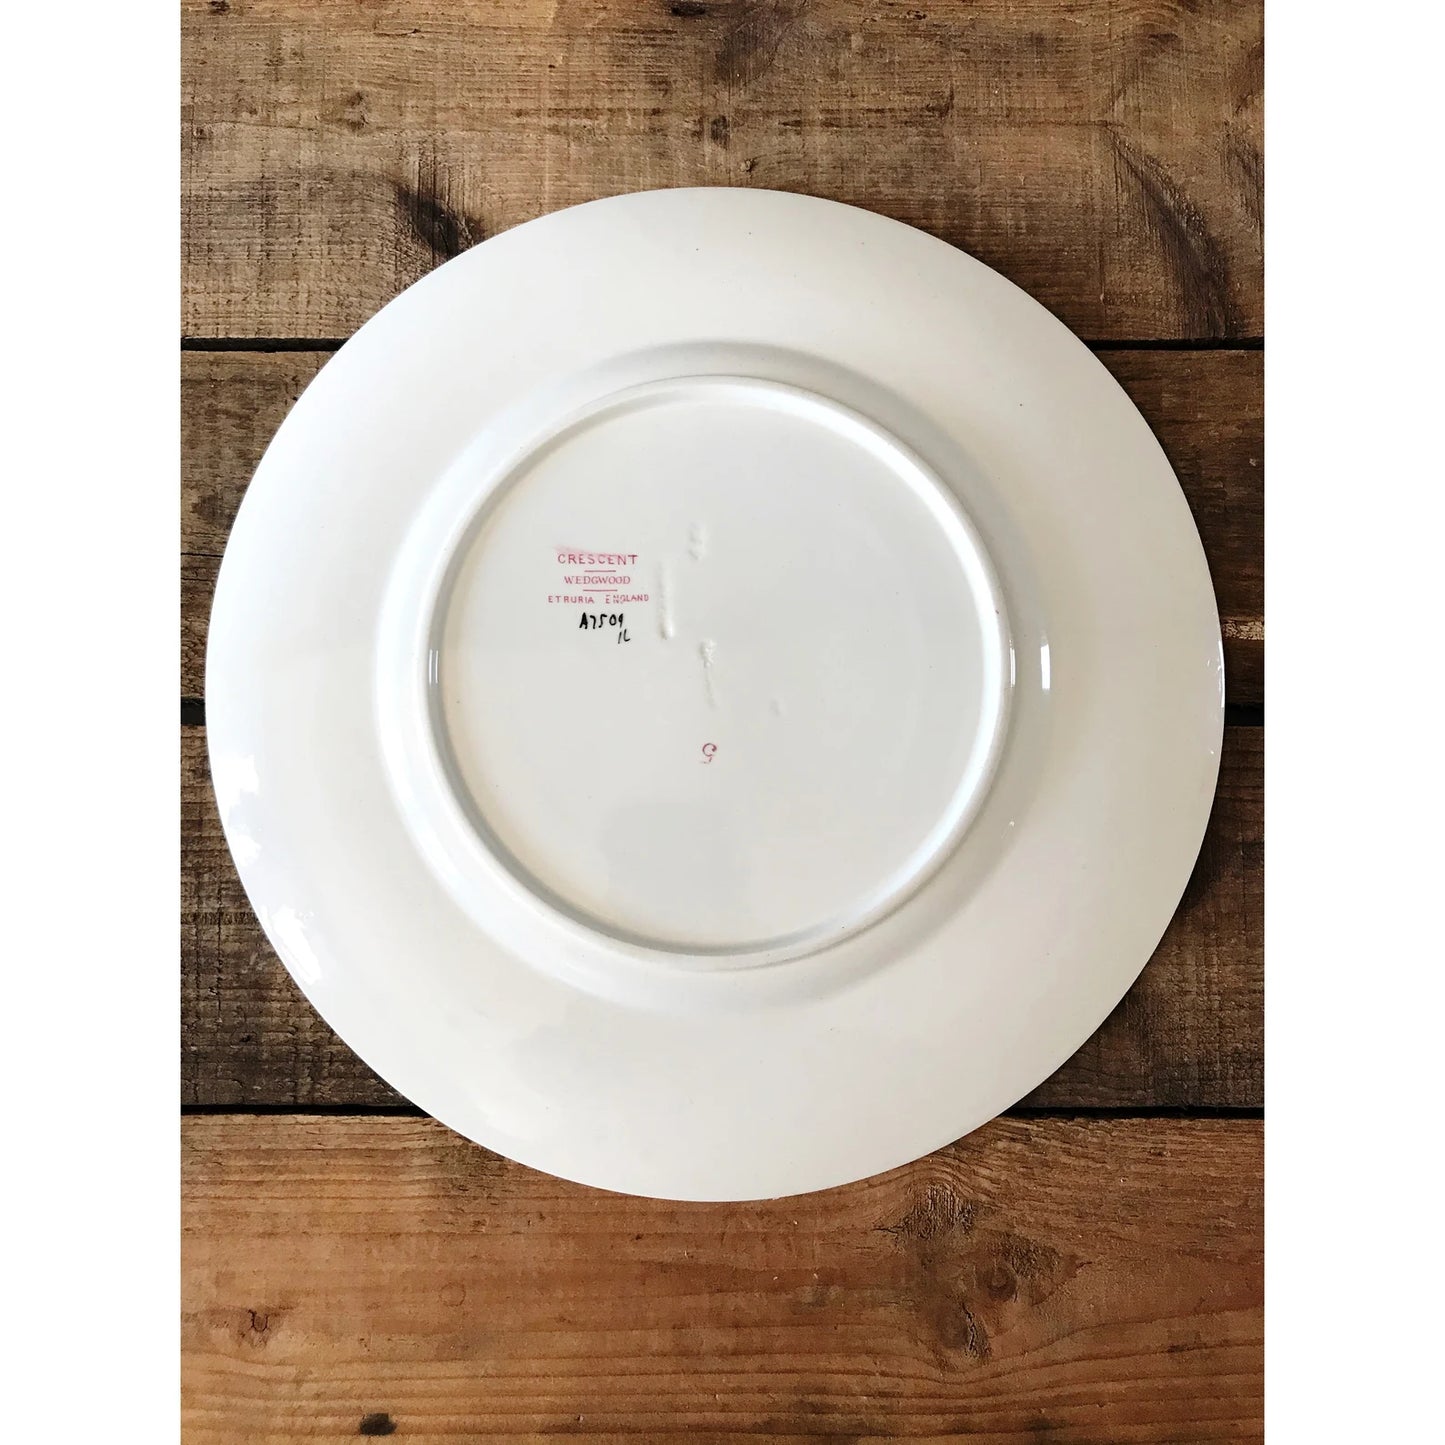 Vintage Wedgwood Crescent Dinner Plate